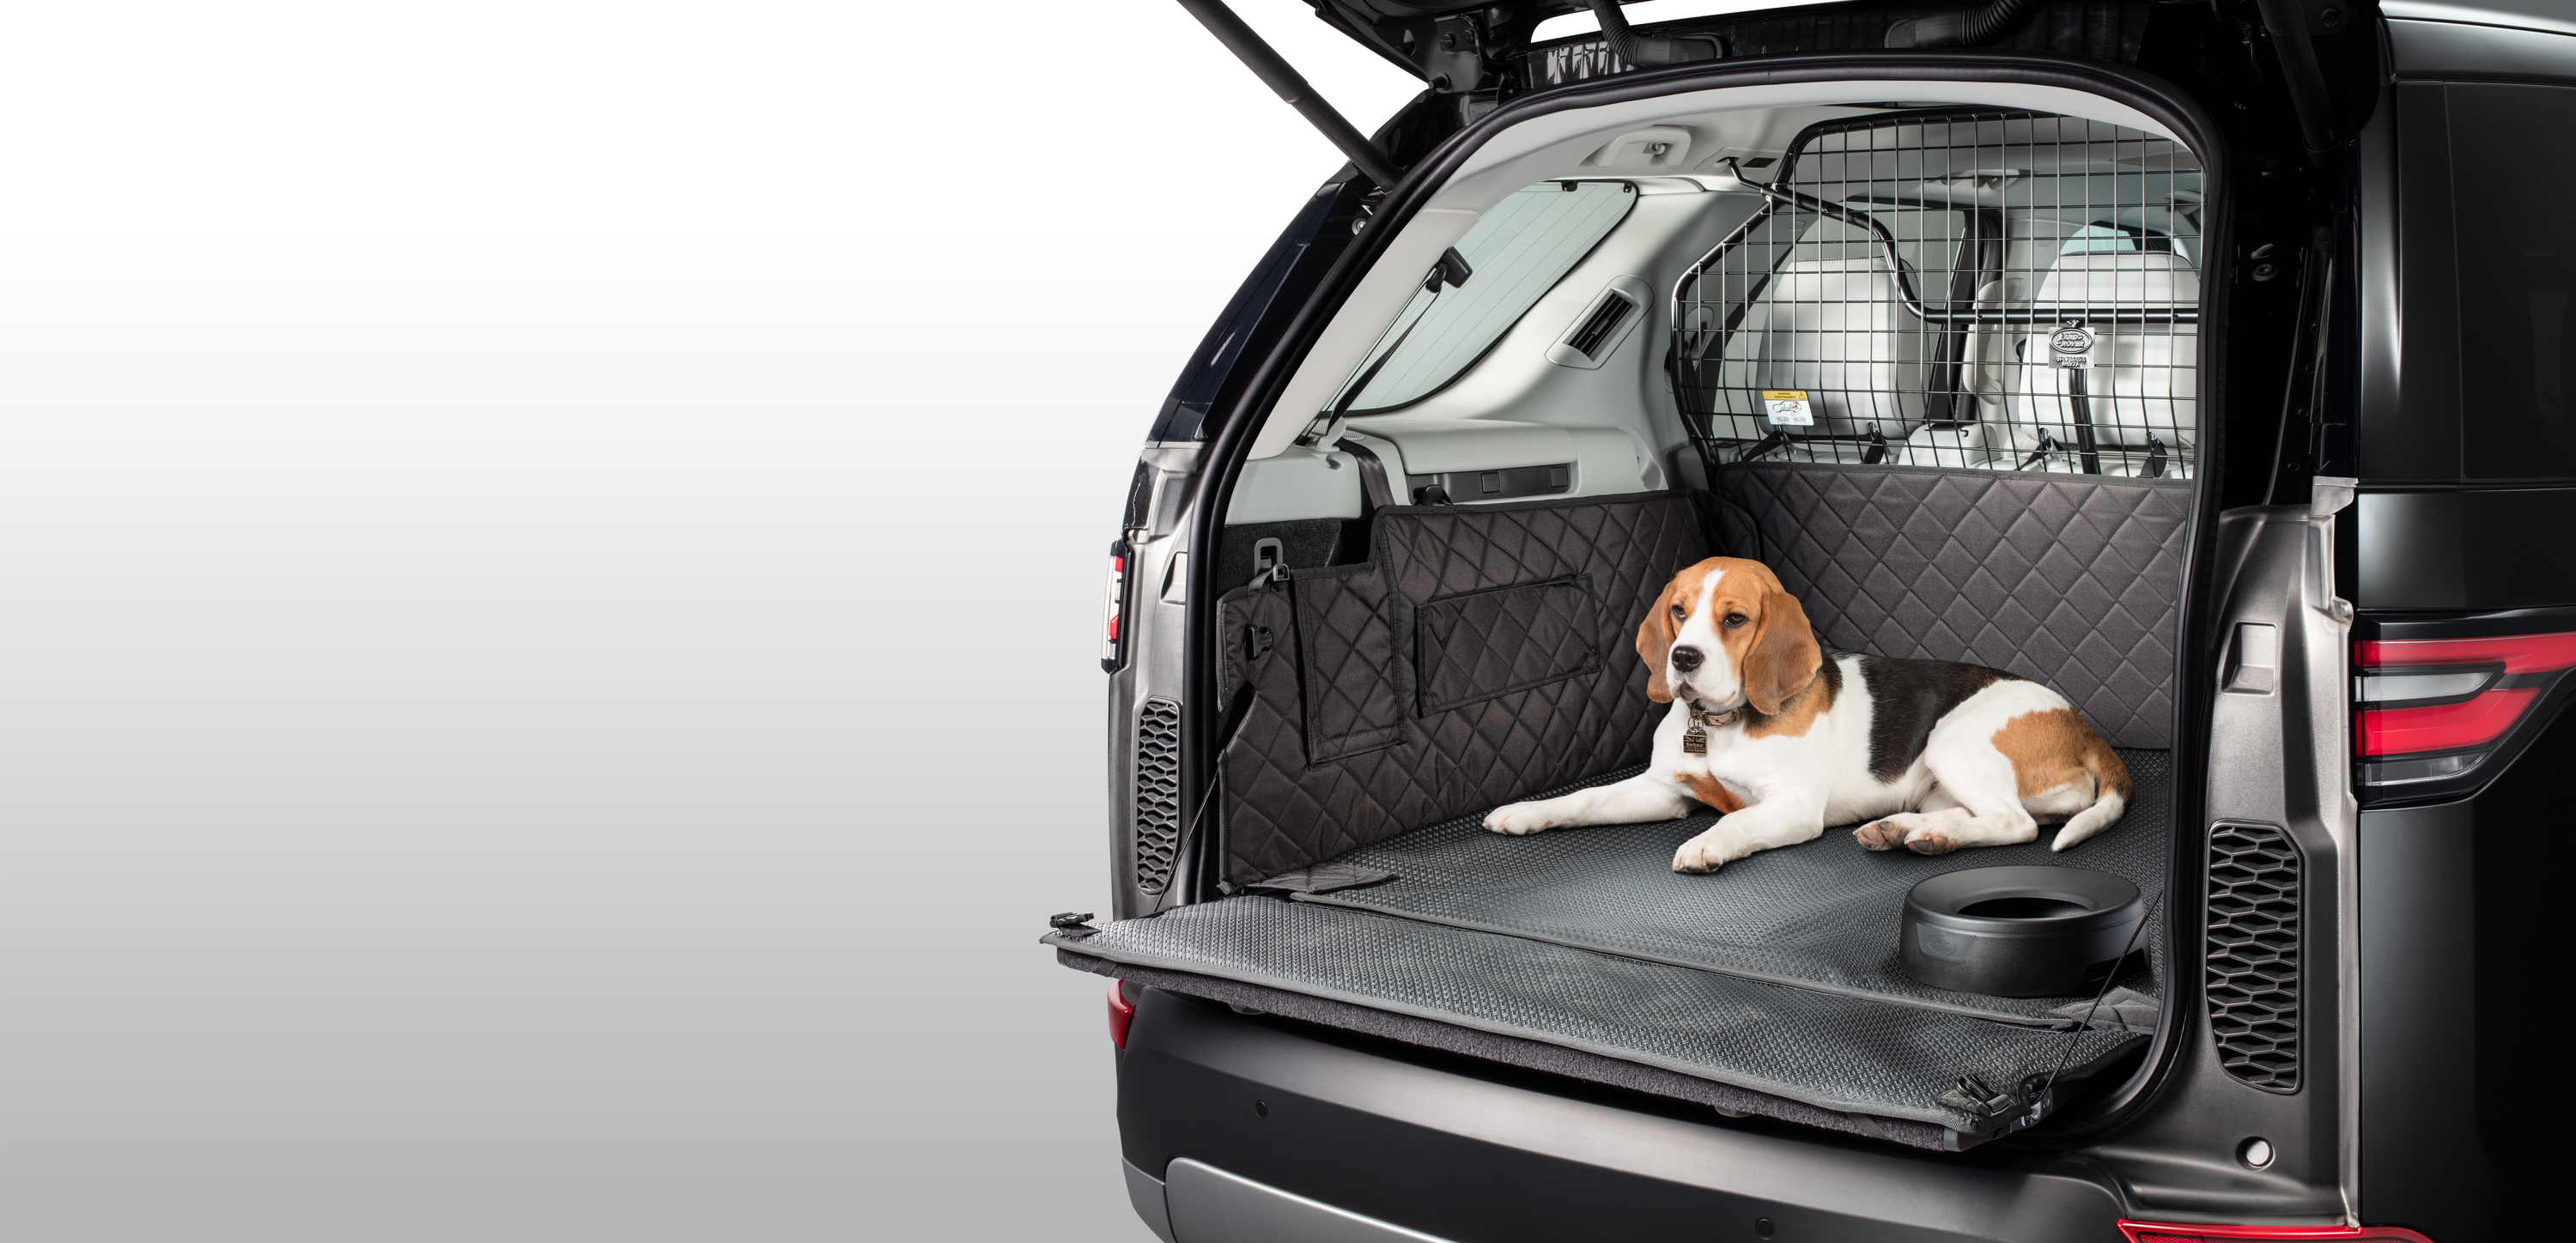 Машинки для собак рейтинг. Перегородка для собак в багажник машины Мерседес в200. Клетка для собаки в багажник lc300. Решетка в багажник для собаки Discovery 4. Чехол в машину для перевозки собак в багажнике для Volvo xc40.